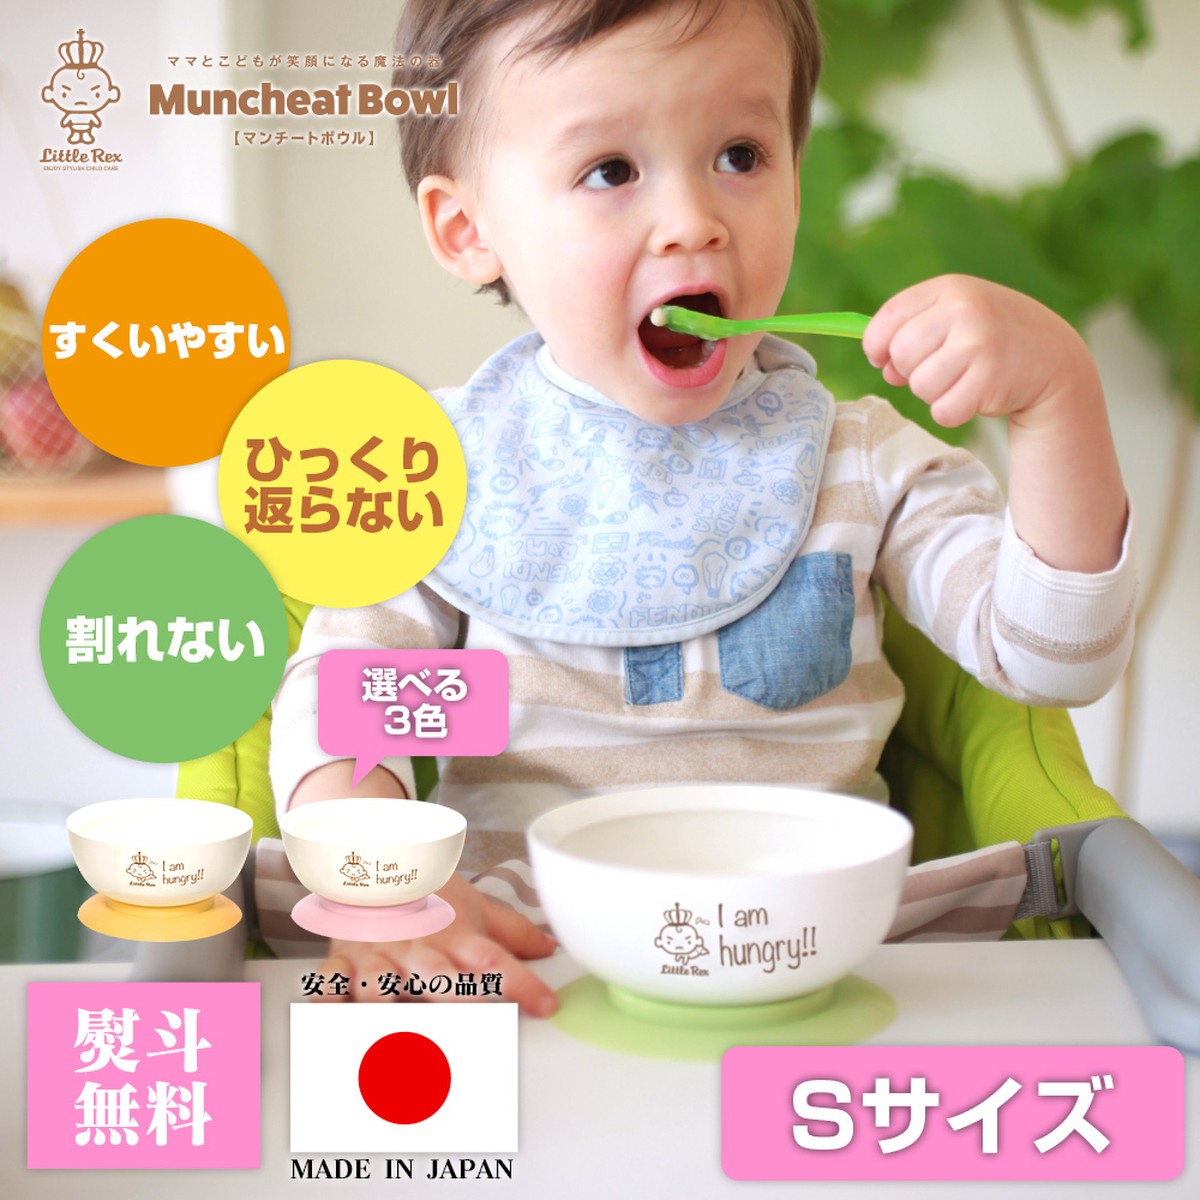 マンチートボウル【Sサイズ】ベビー食器 赤ちゃん 離乳食 ひっくり返らない こぼさない 日本製 1歳 2歳 3歳 6ヶ月 7ヶ月 8ヶ月 9